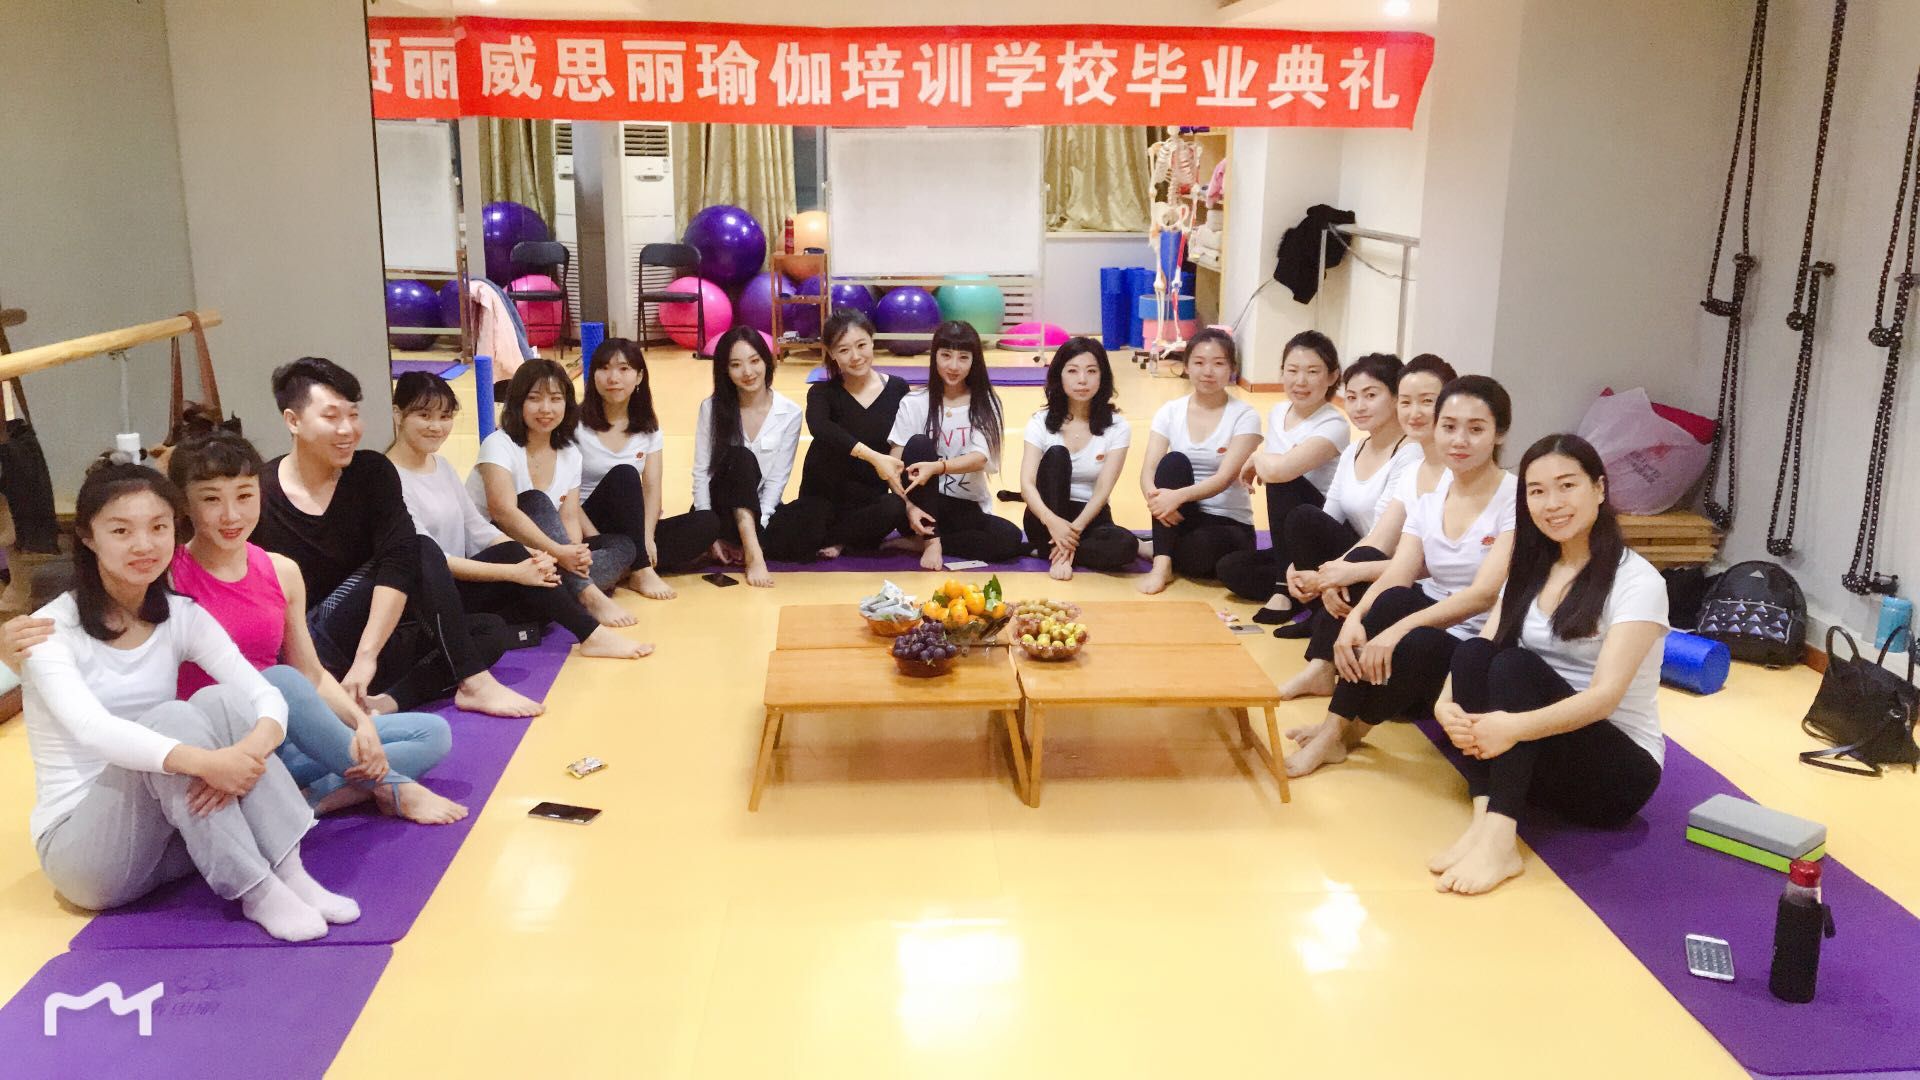 沈阳威思丽瑜伽教练培训学校